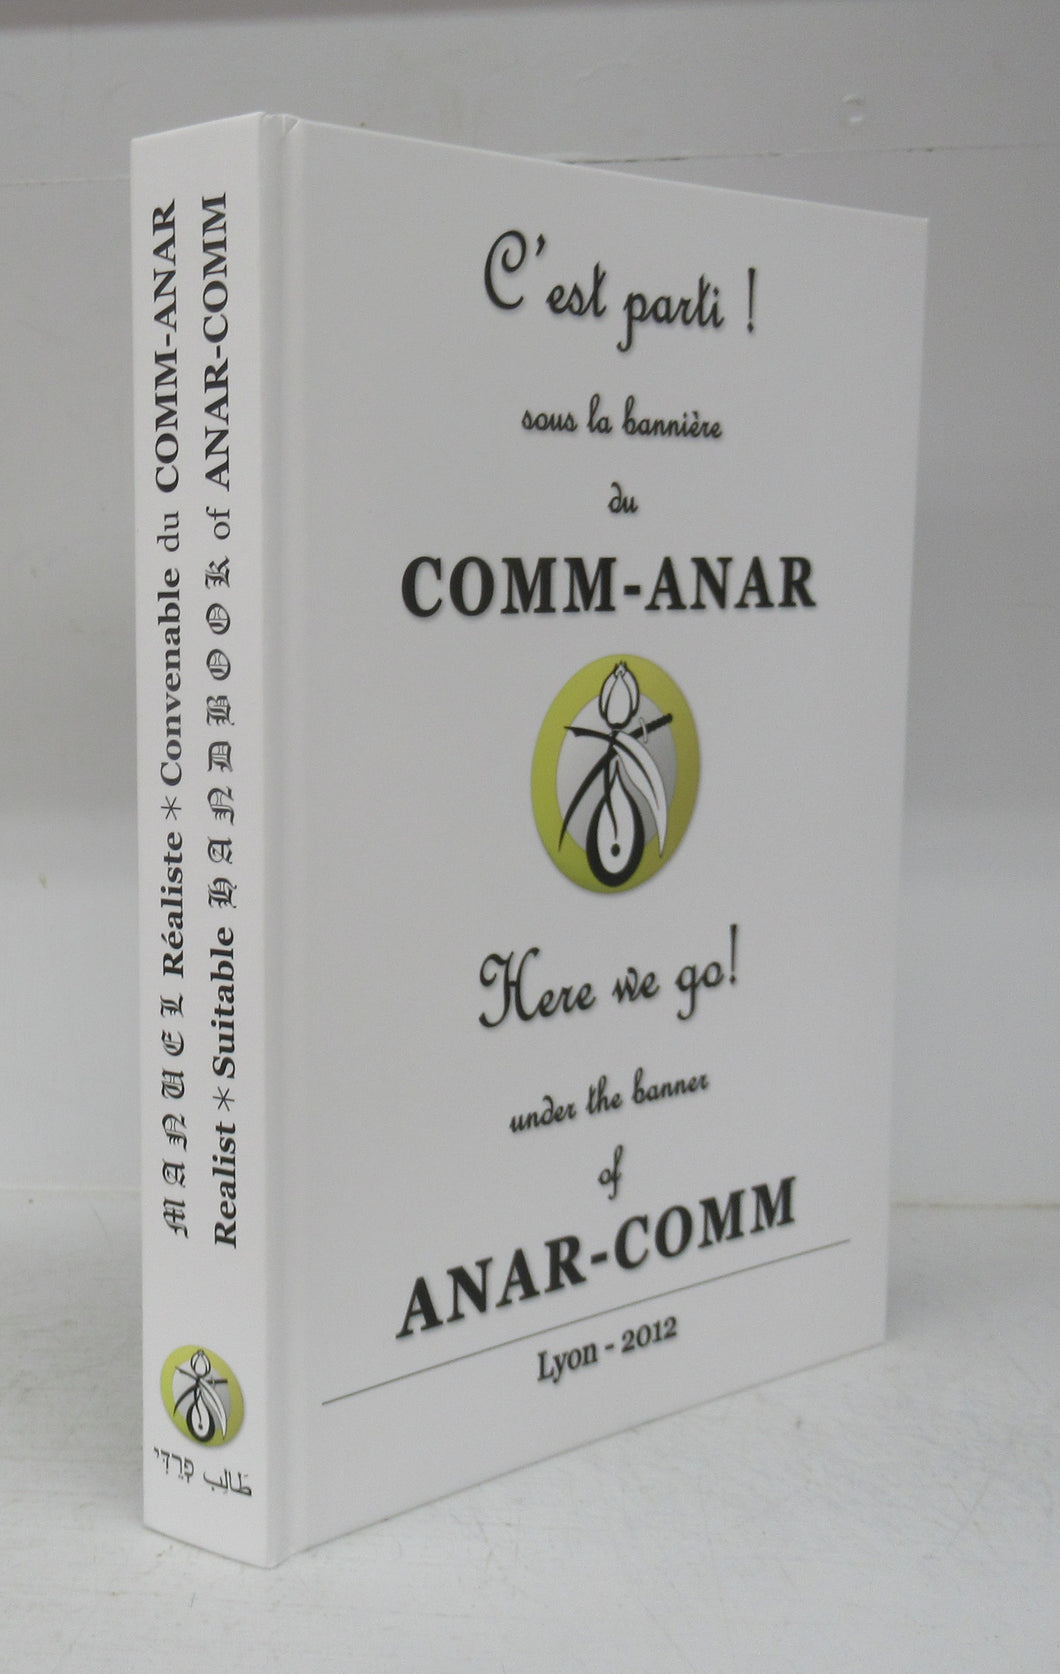 C'est parti! souls la bannière du Comm-Anar. Lyon - 2012